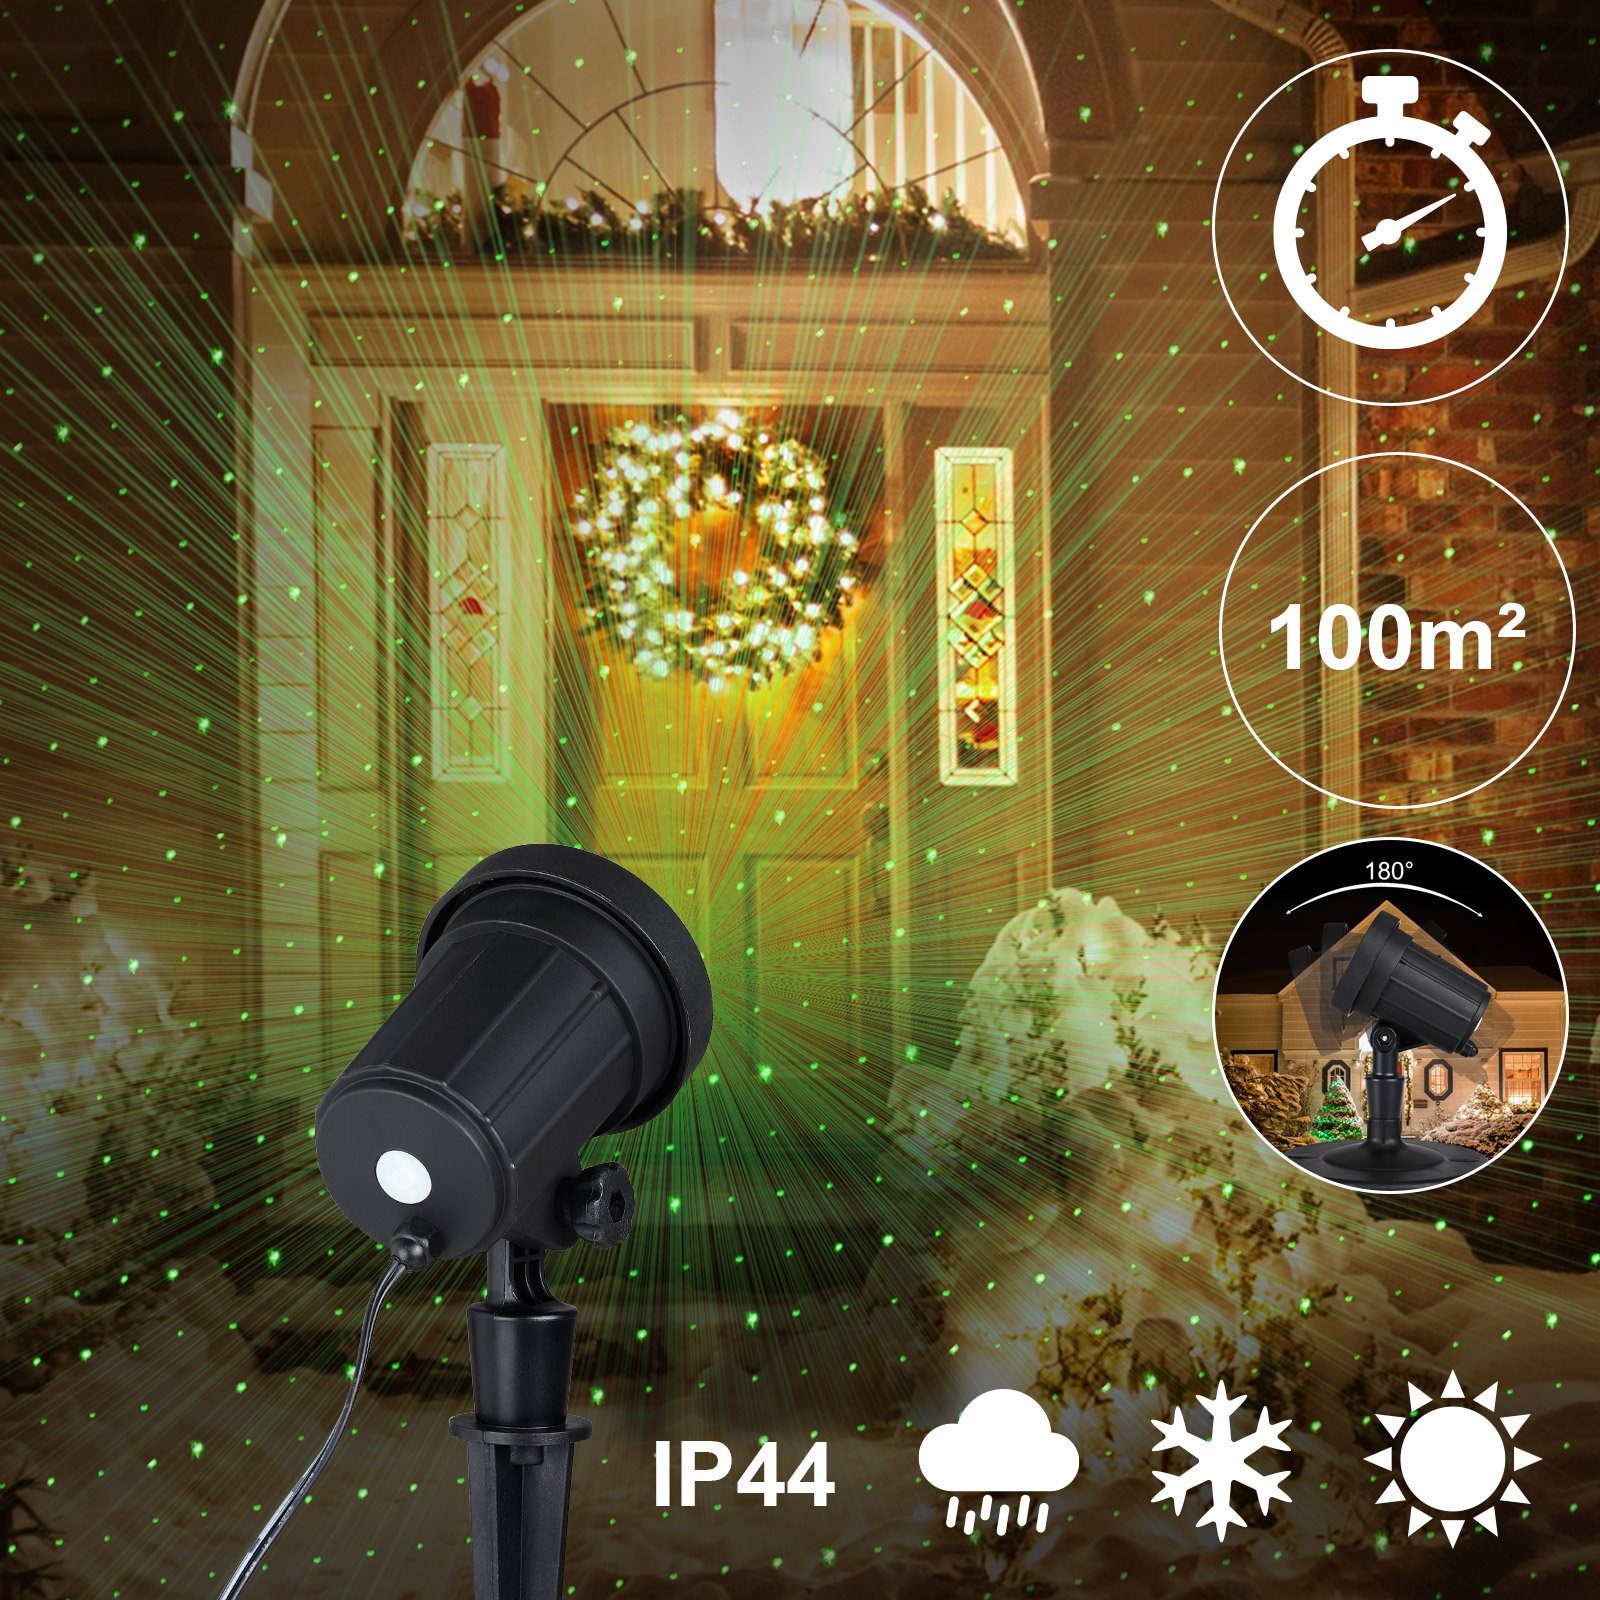 monzana Gartenstrahler, LED Projektor 100m² Weihnachten Aussen Innen IP44  Timer Sternenhimmel Hauswand Weihnachtsdeko Weihnachtsbeleuchtung Deko  Strahler Projektorlampe Lampe